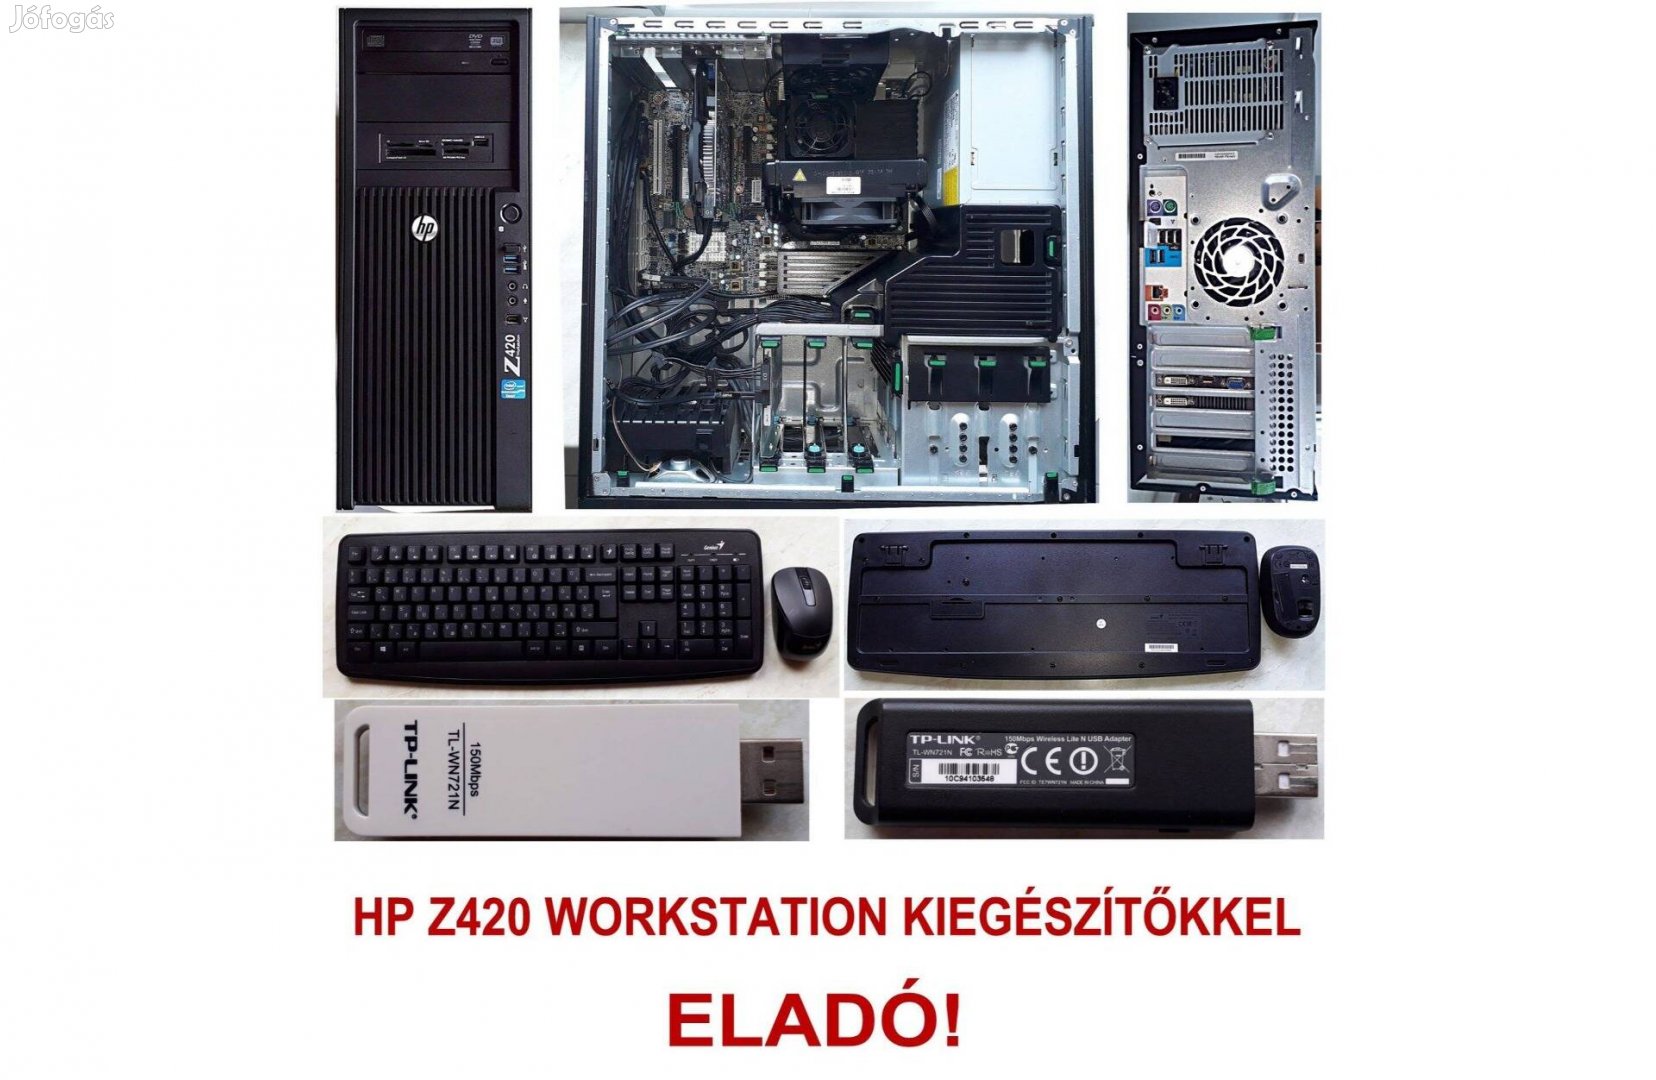 HP Z420 hibátlan, újszerű állapotban kiegészítőkkel eladó!